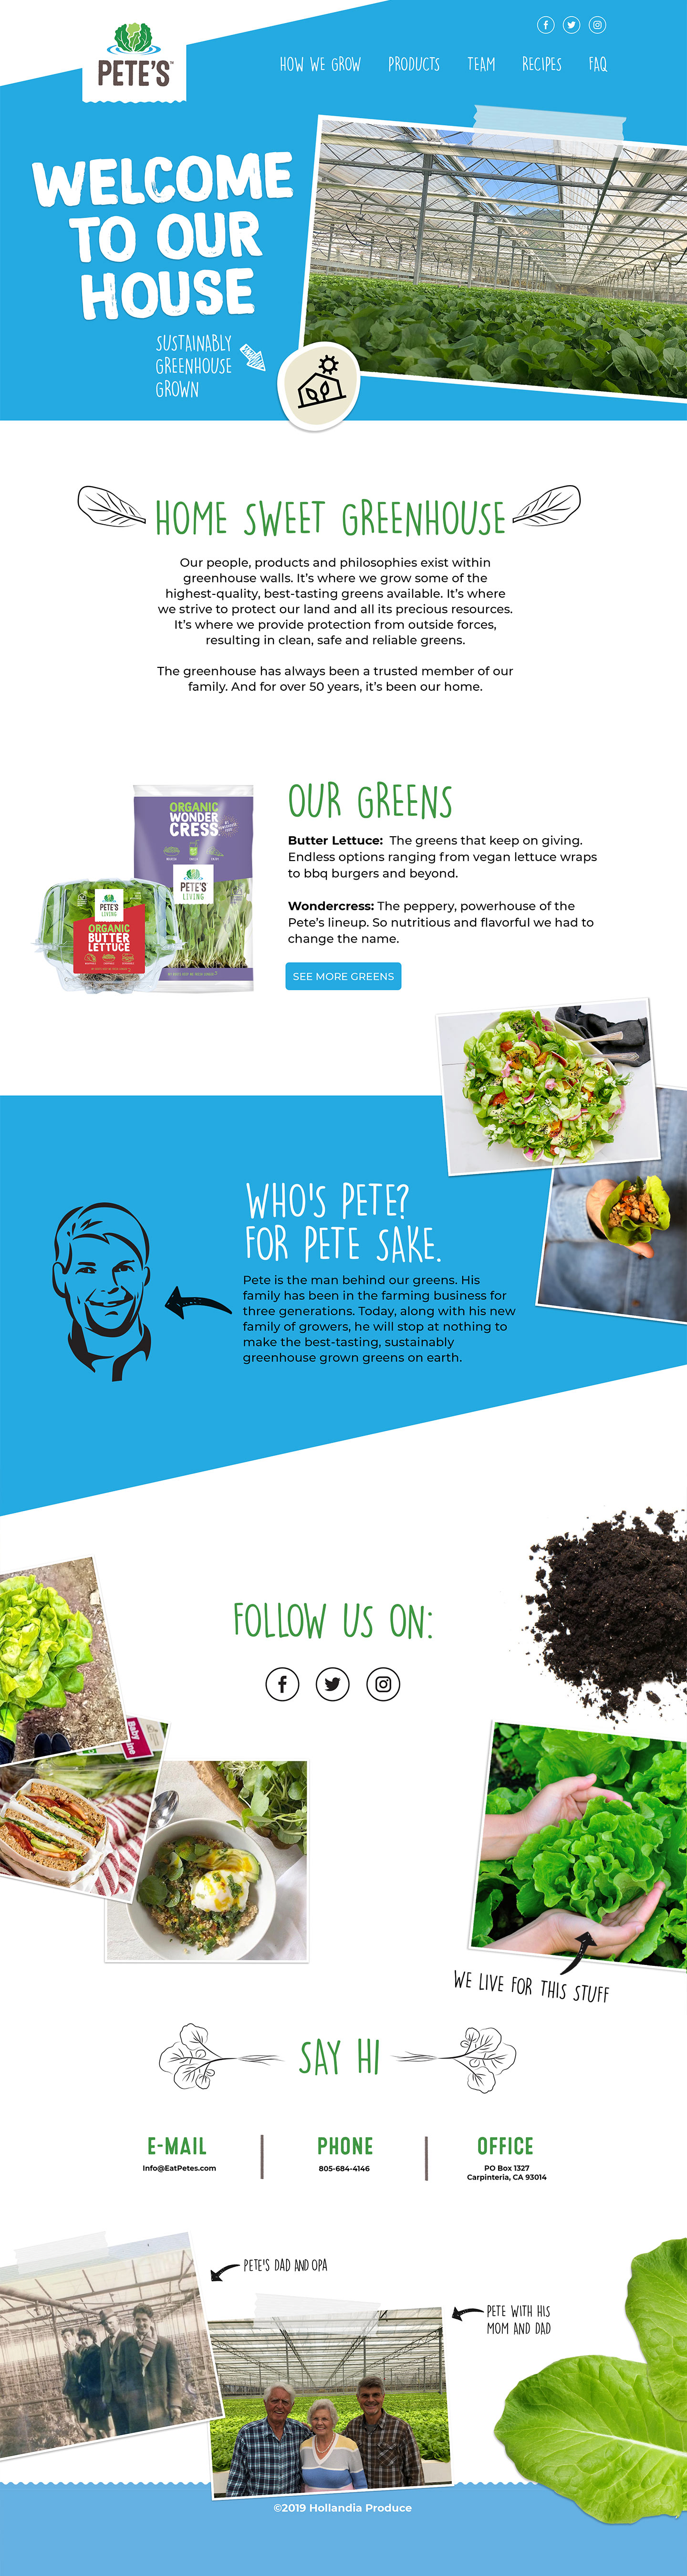 Pete's Living - eatpetes.com - Website Redesign Santa Barbara CA